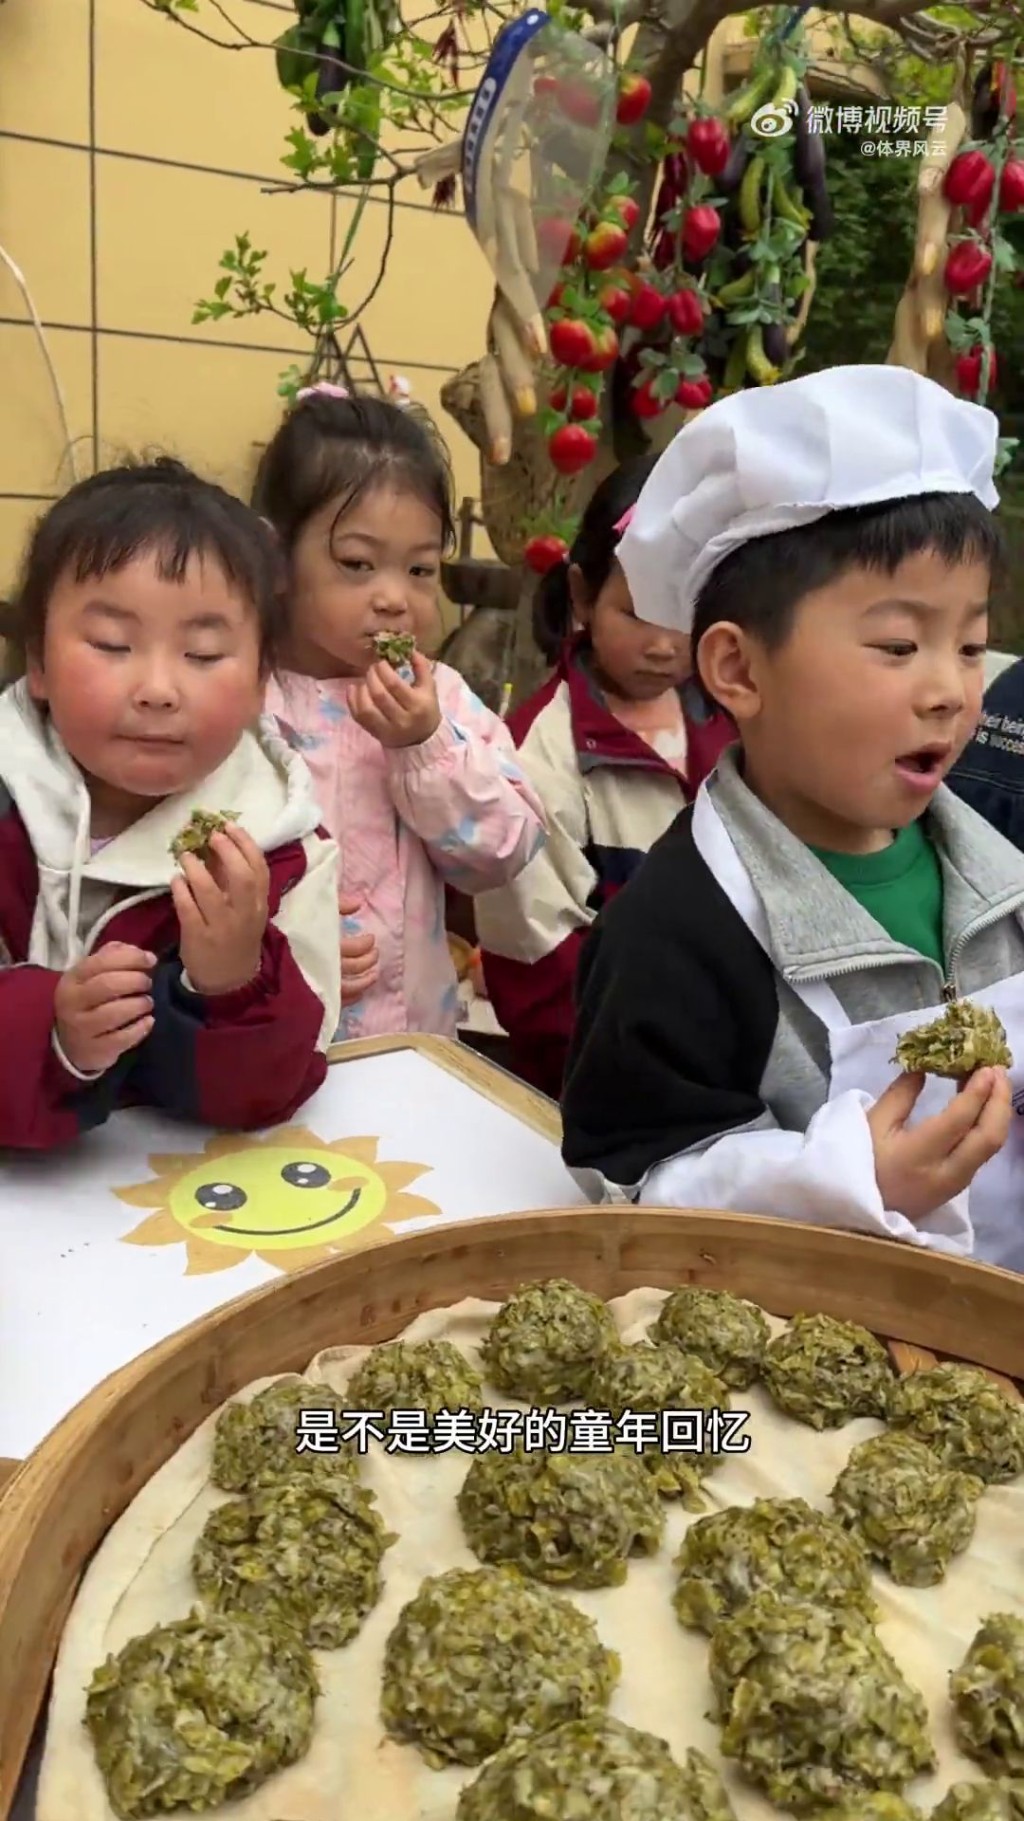 一年四季，徐海路幼兒園都有不同的生活課程。